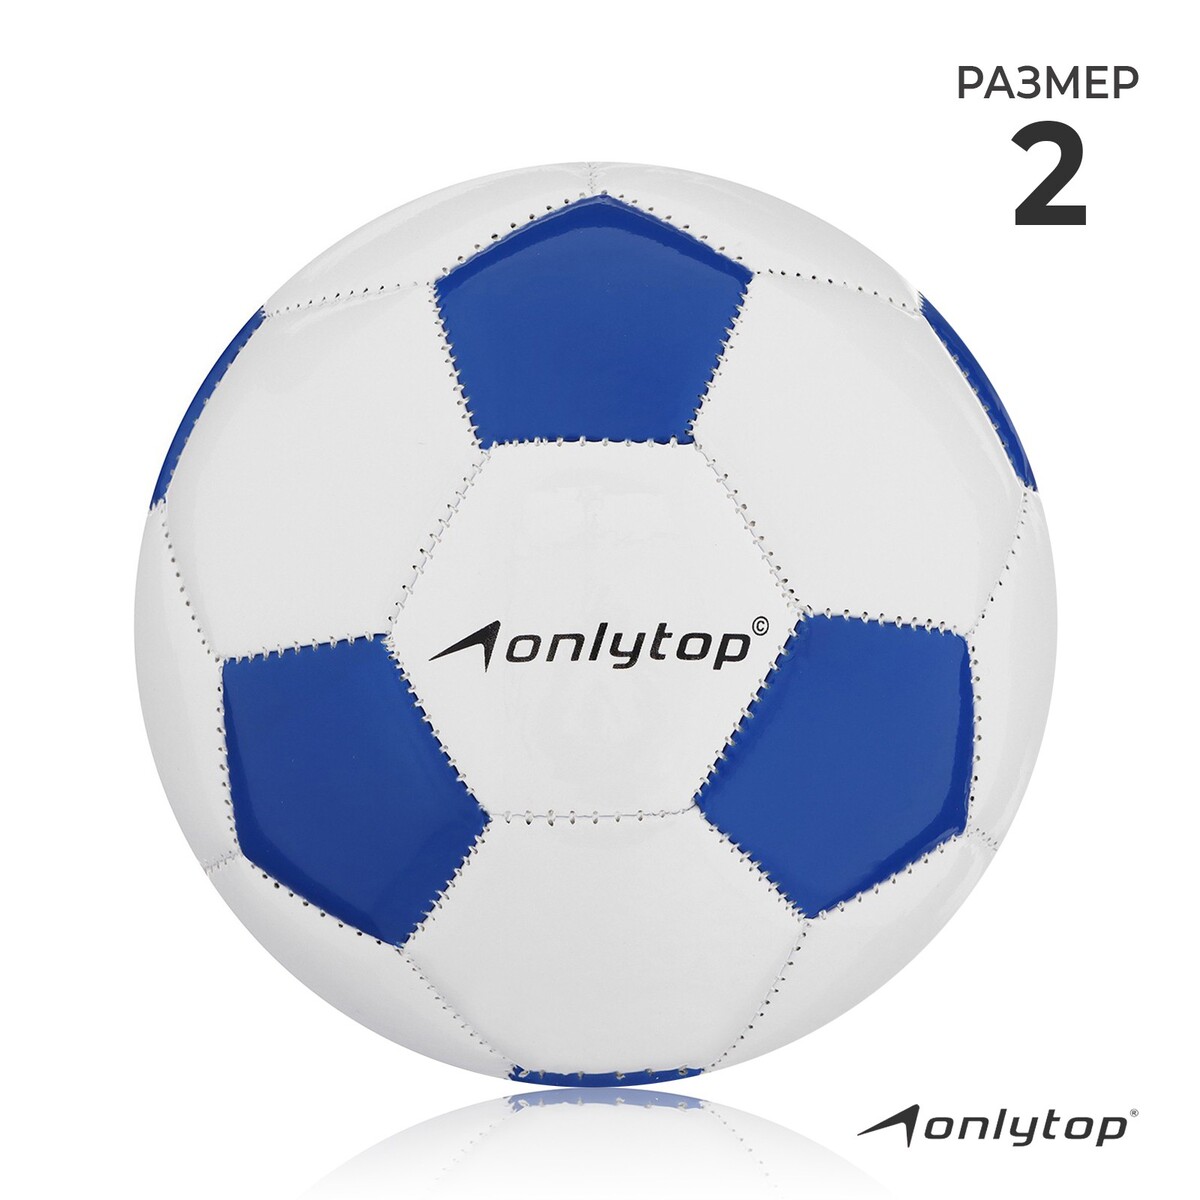 Мяч футбольный onlytop classic, pvc, машинная сшивка, 32 панели, р. 2 мяч футбольный onlytop pvc машинная сшивка 32 панели р 4